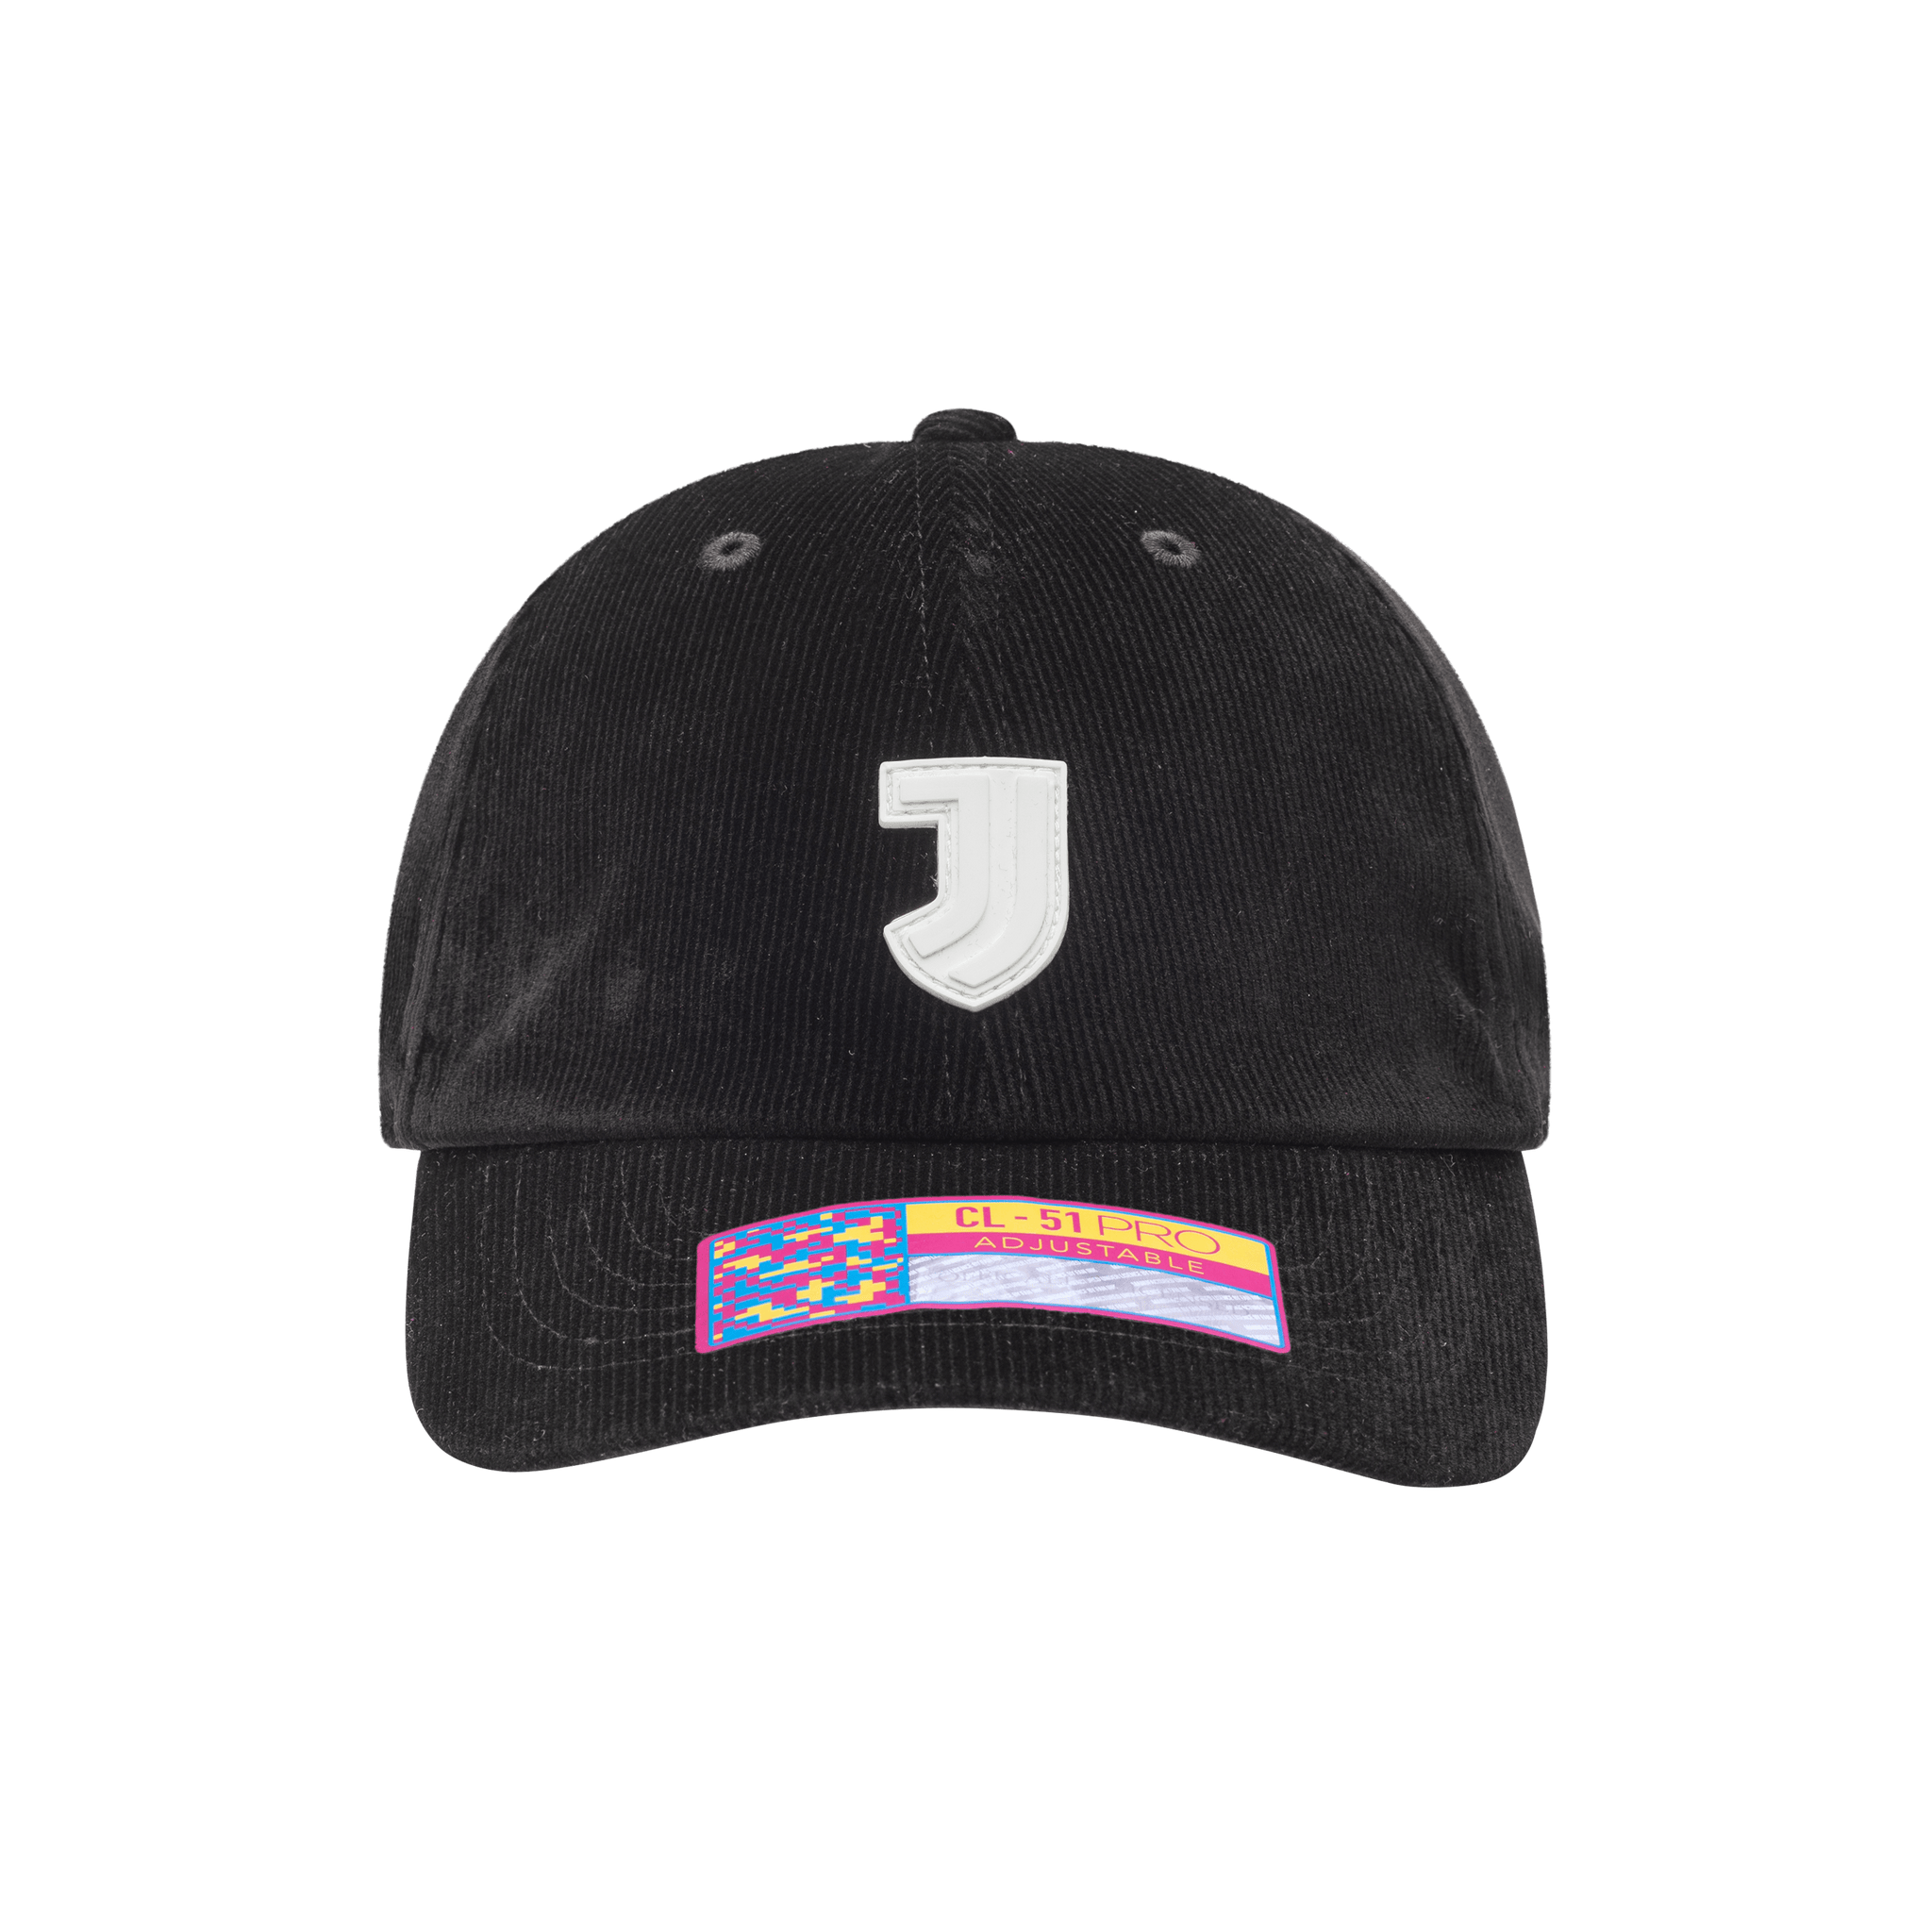 Juventus Casuals Classic Hat